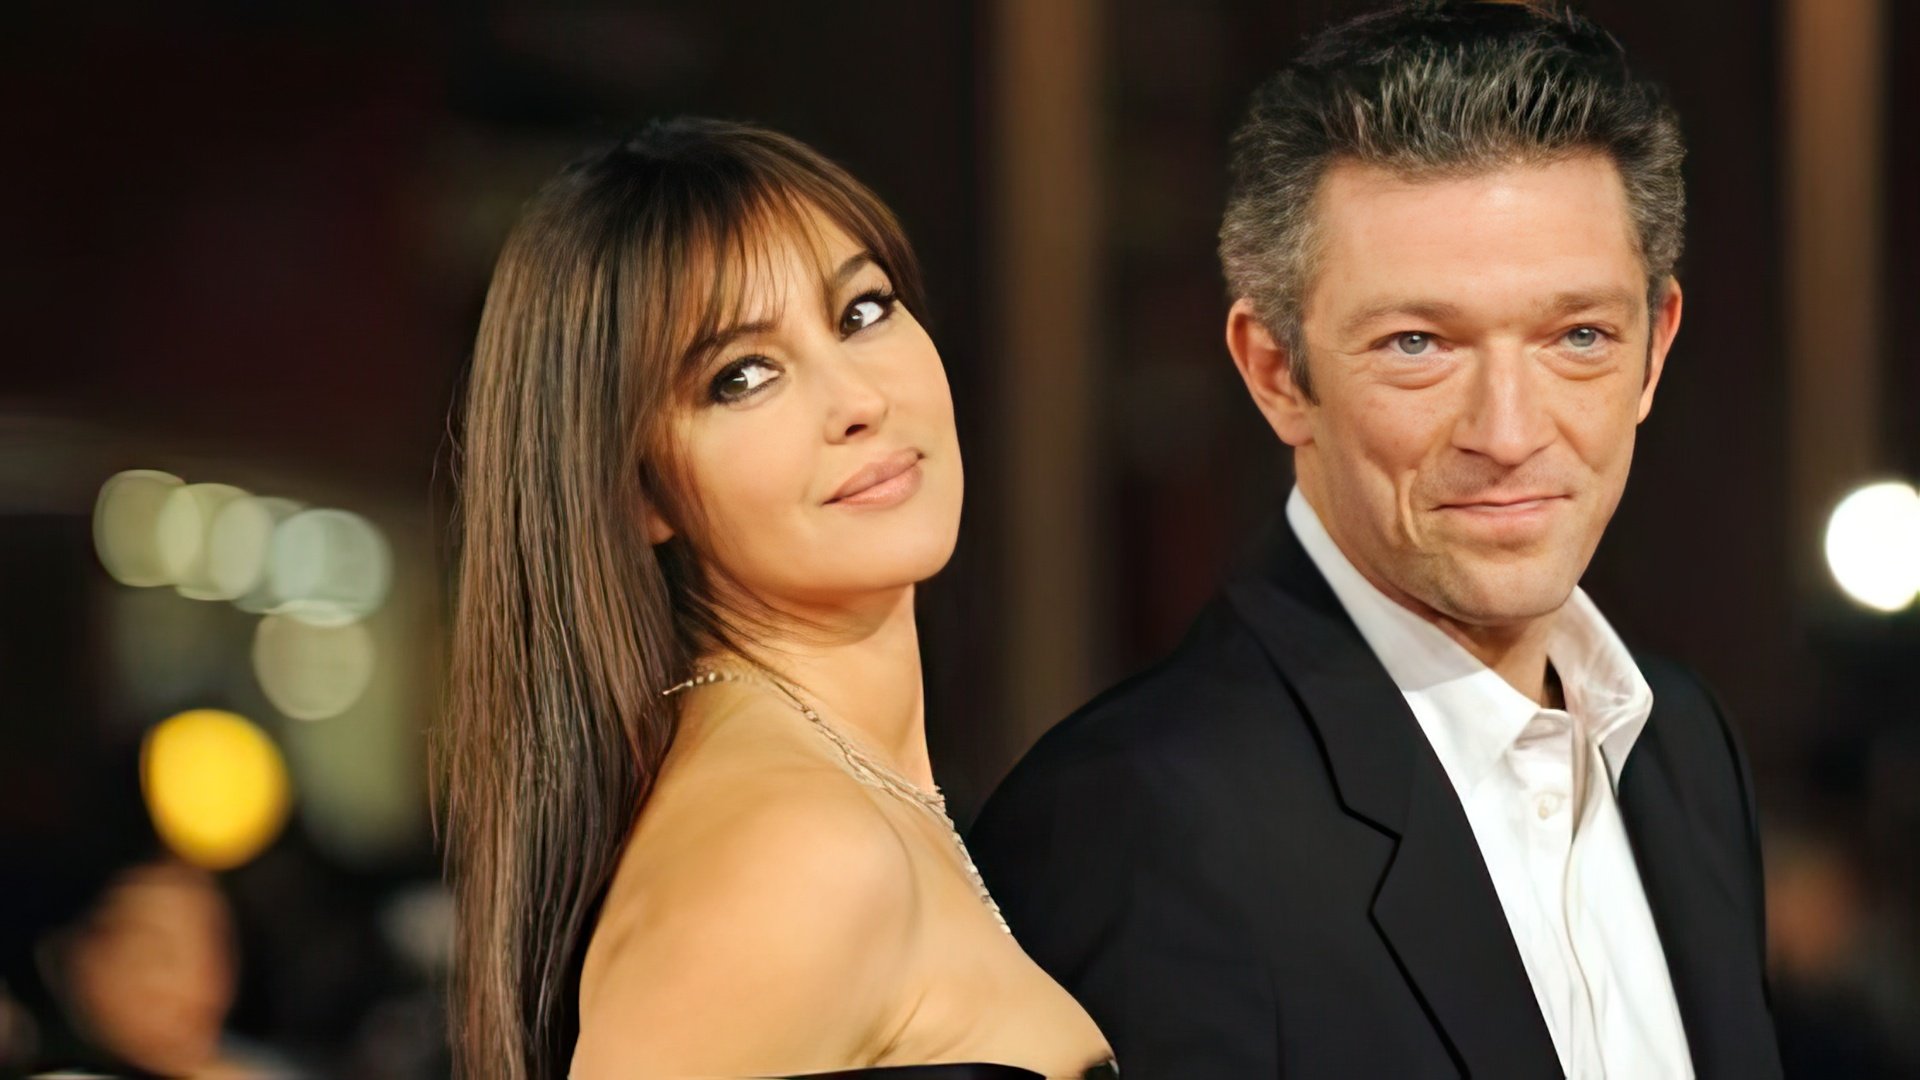 In 2013, Bellucci and Cassel divorced